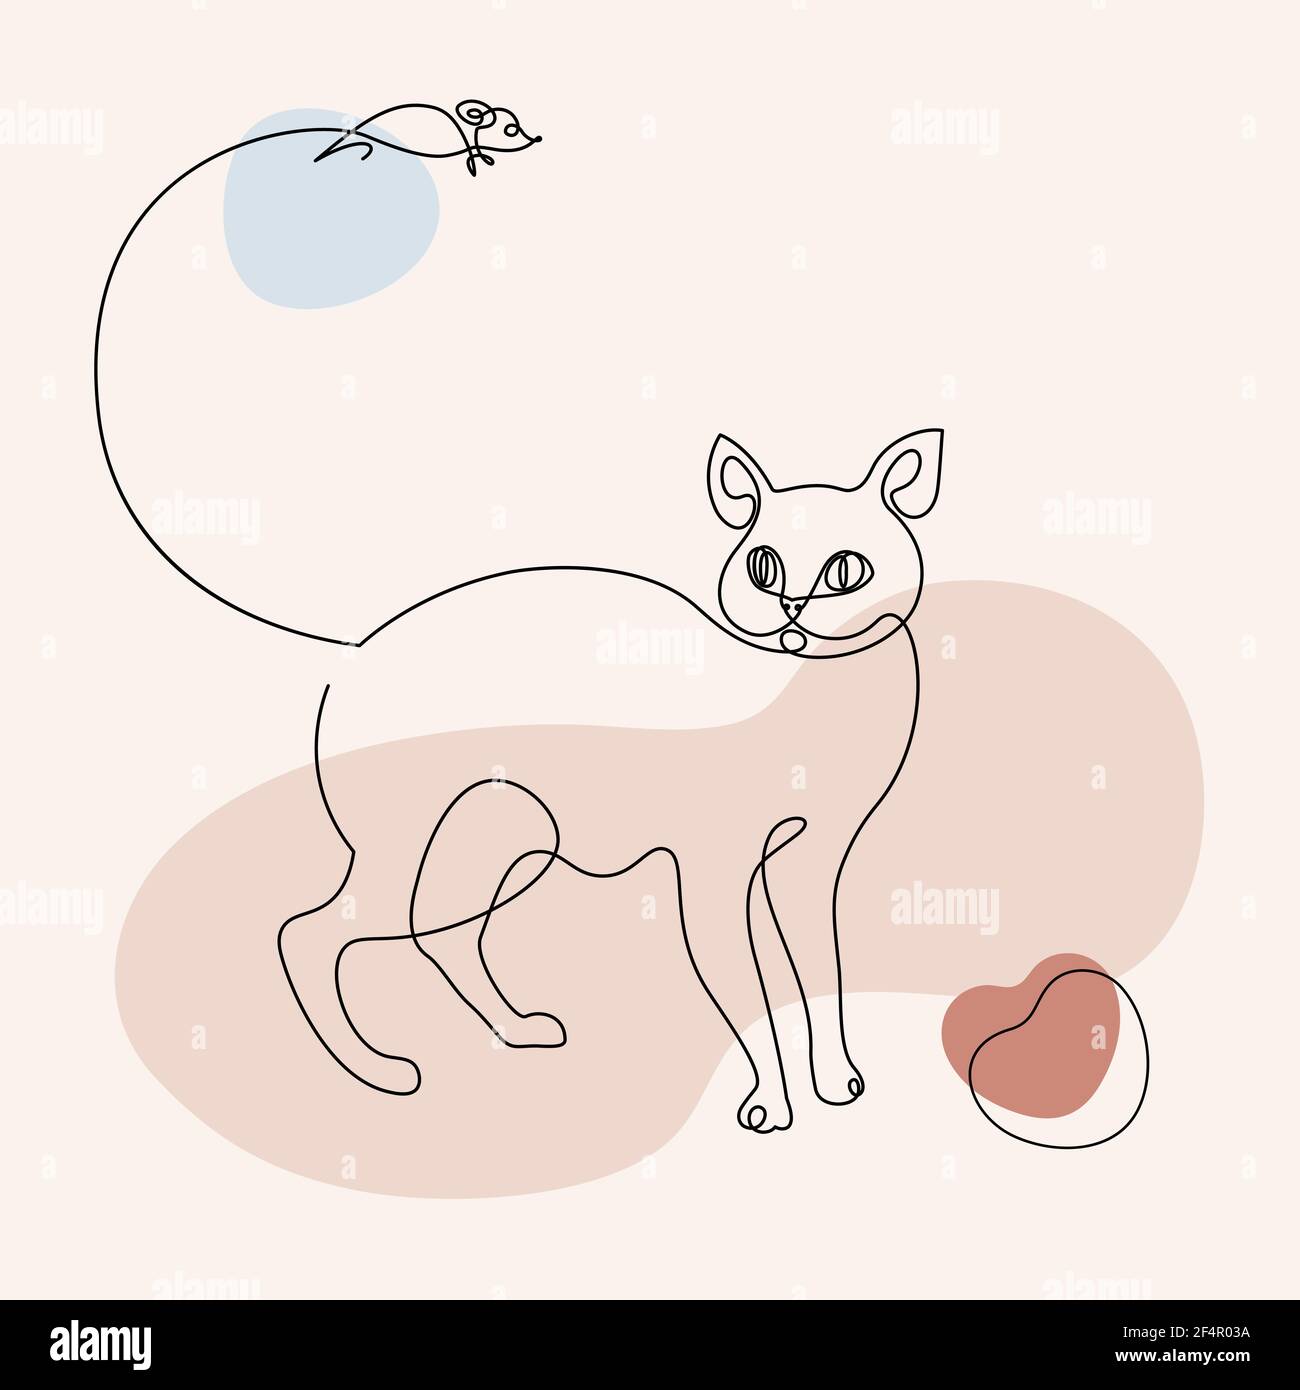 Moderne Résumé une ligne dessinant chat et souris avec des formes abstraites isolées sur fond blanc. Illustration vectorielle de ligne continue tracée à la main Illustration de Vecteur